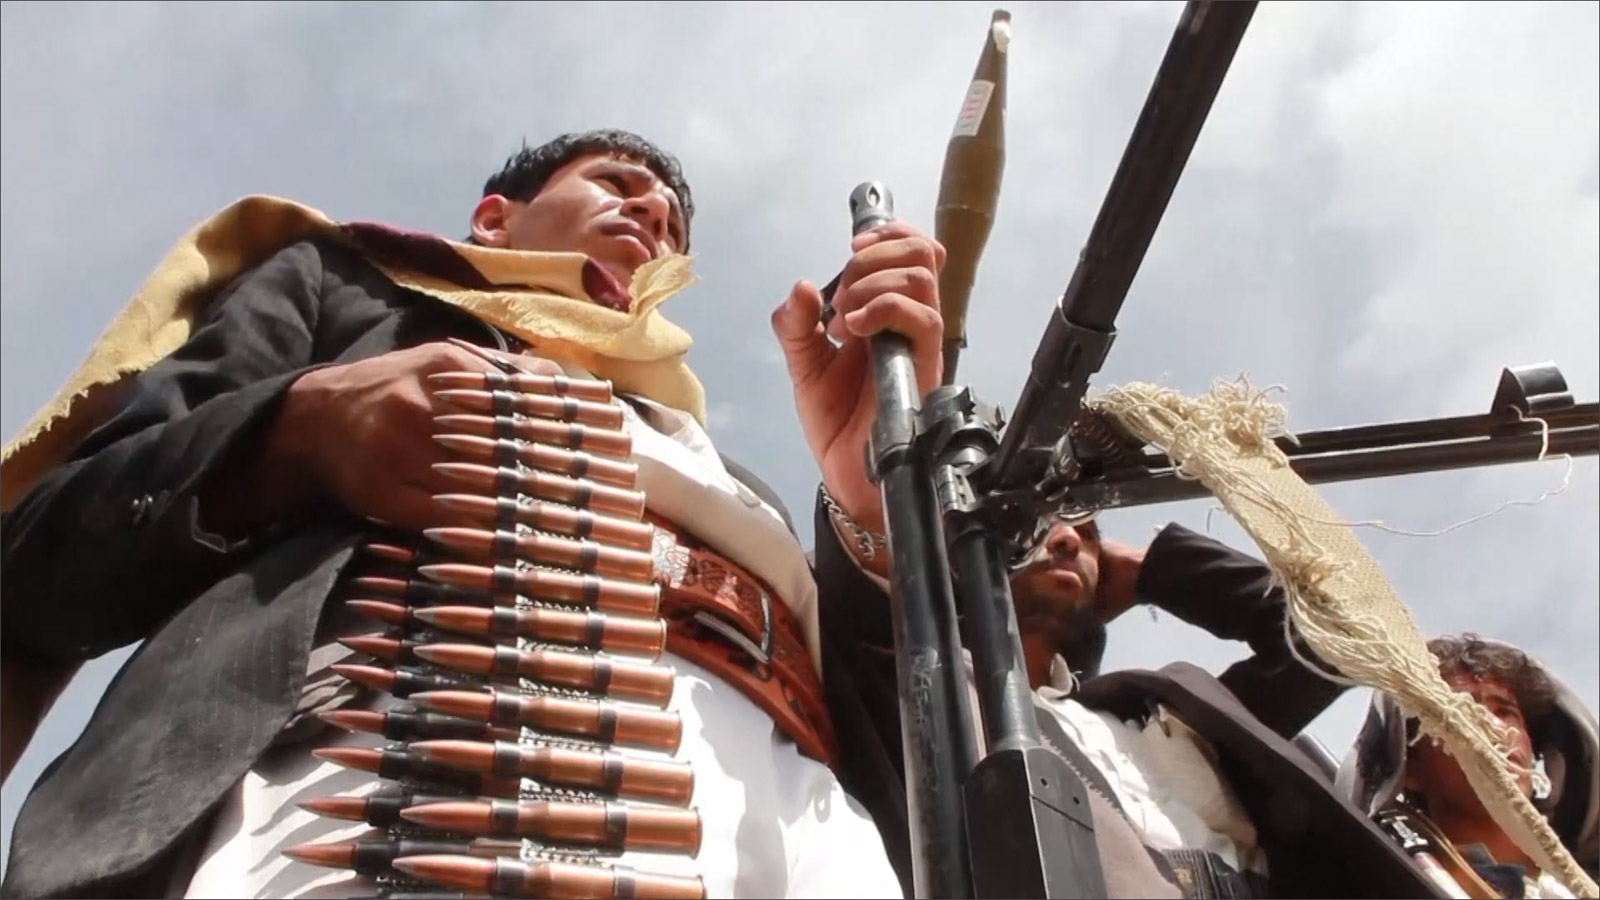 ظريف نفى تزويد الحوثيين بالسلاح مؤكدا أن أسلحتهم اشتريت بأموال سعودية 